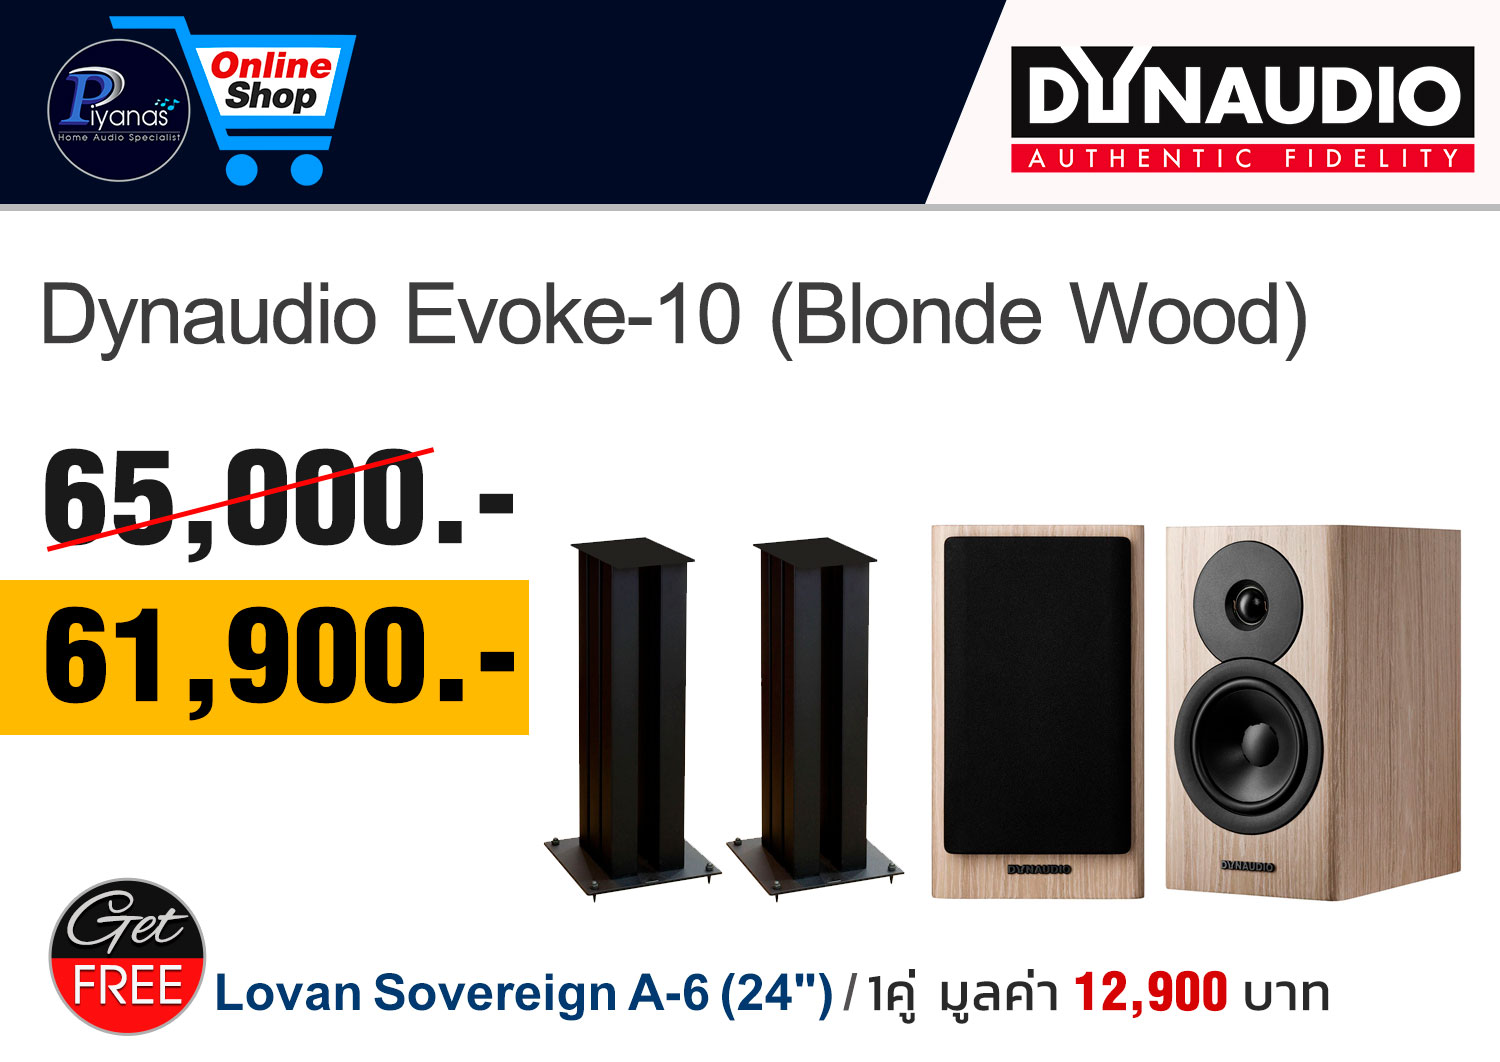 オーディオ機器 スピーカー Evoke-10 (Blonde Wood)